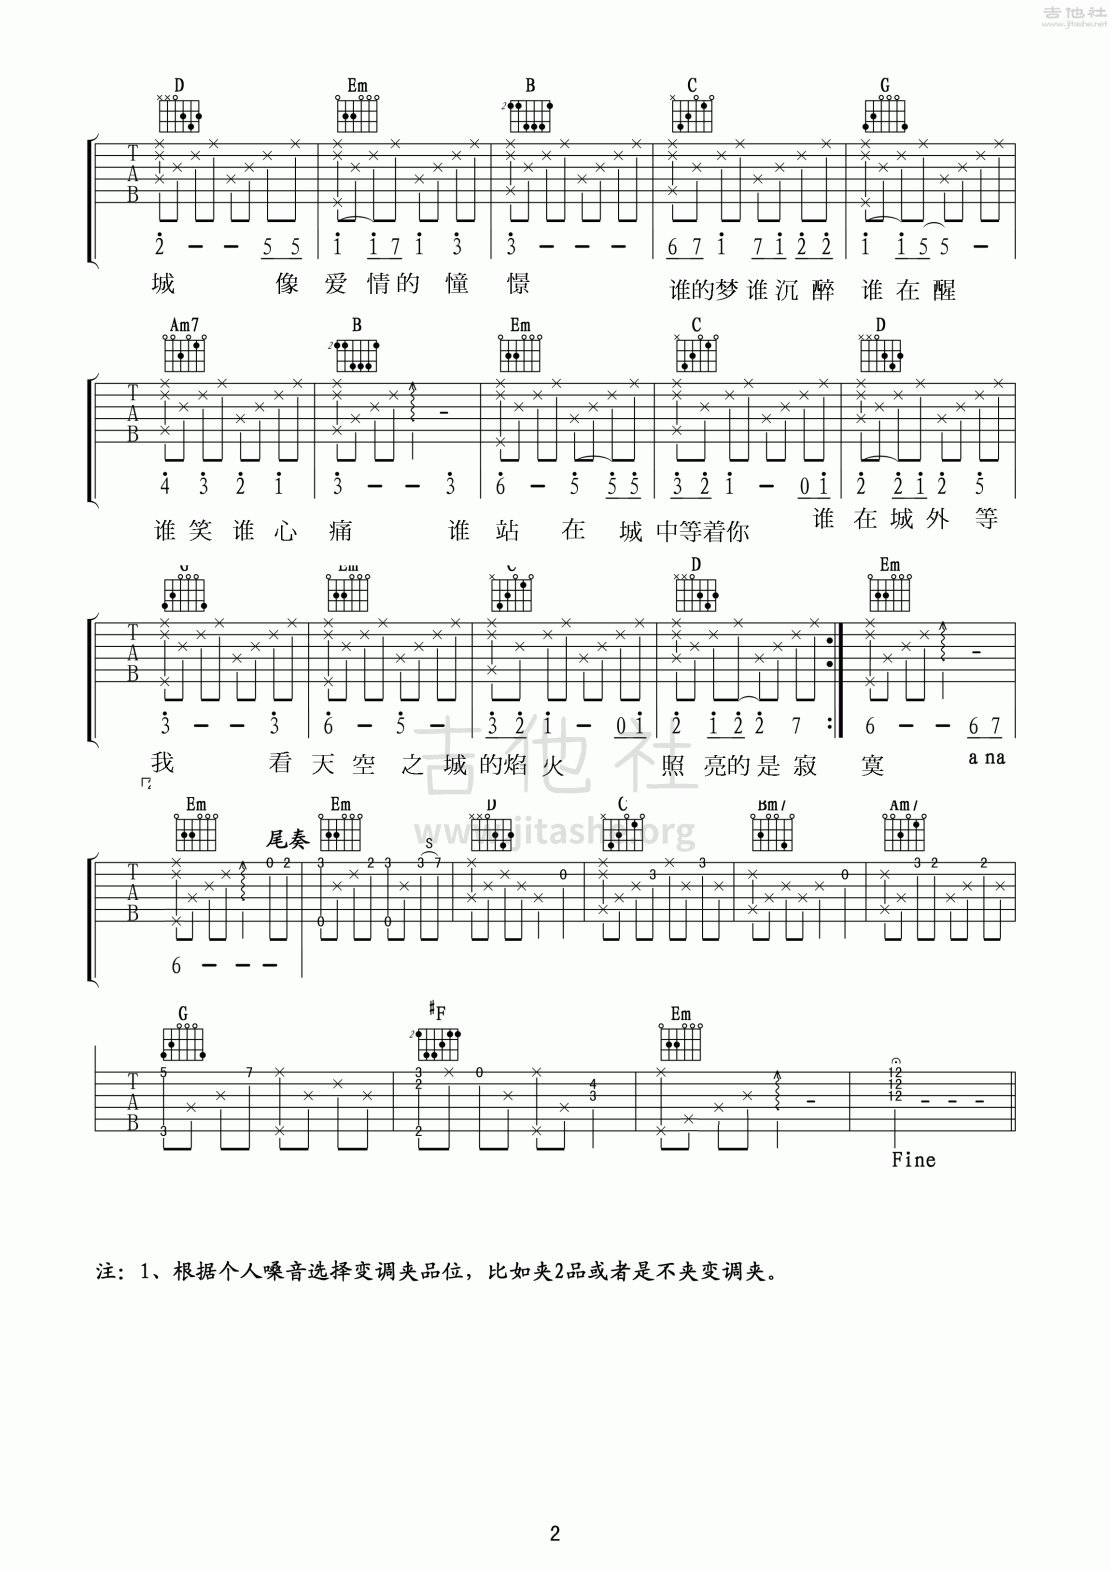 天空之城吉他谱(图片谱,弹唱,中文版)_动漫游戏(ACG)_天空之城中文版弹唱_2.gif